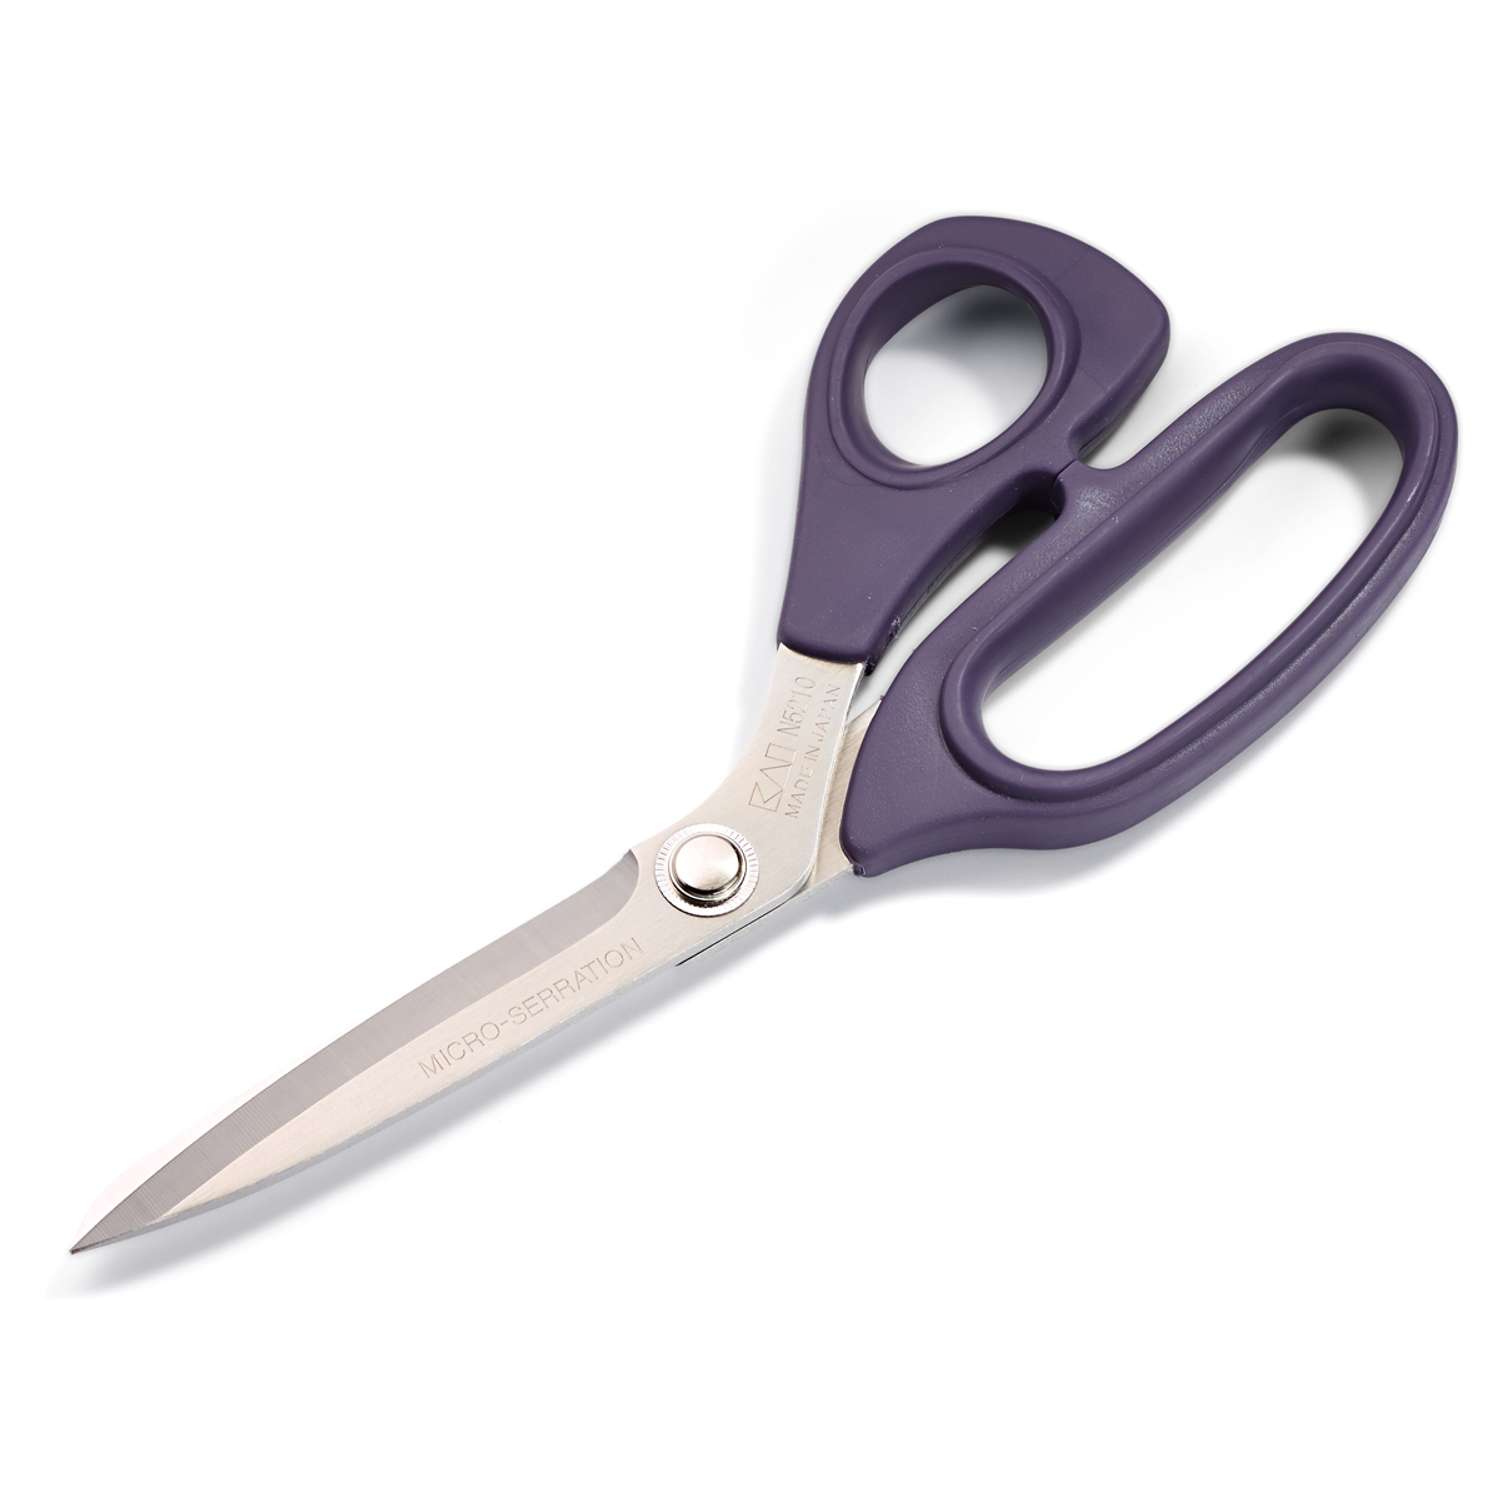 Ножницы Prym портновские со стальными лезвиями с микро заточкой и мягкими ручками 21 см 610508 - фото 4